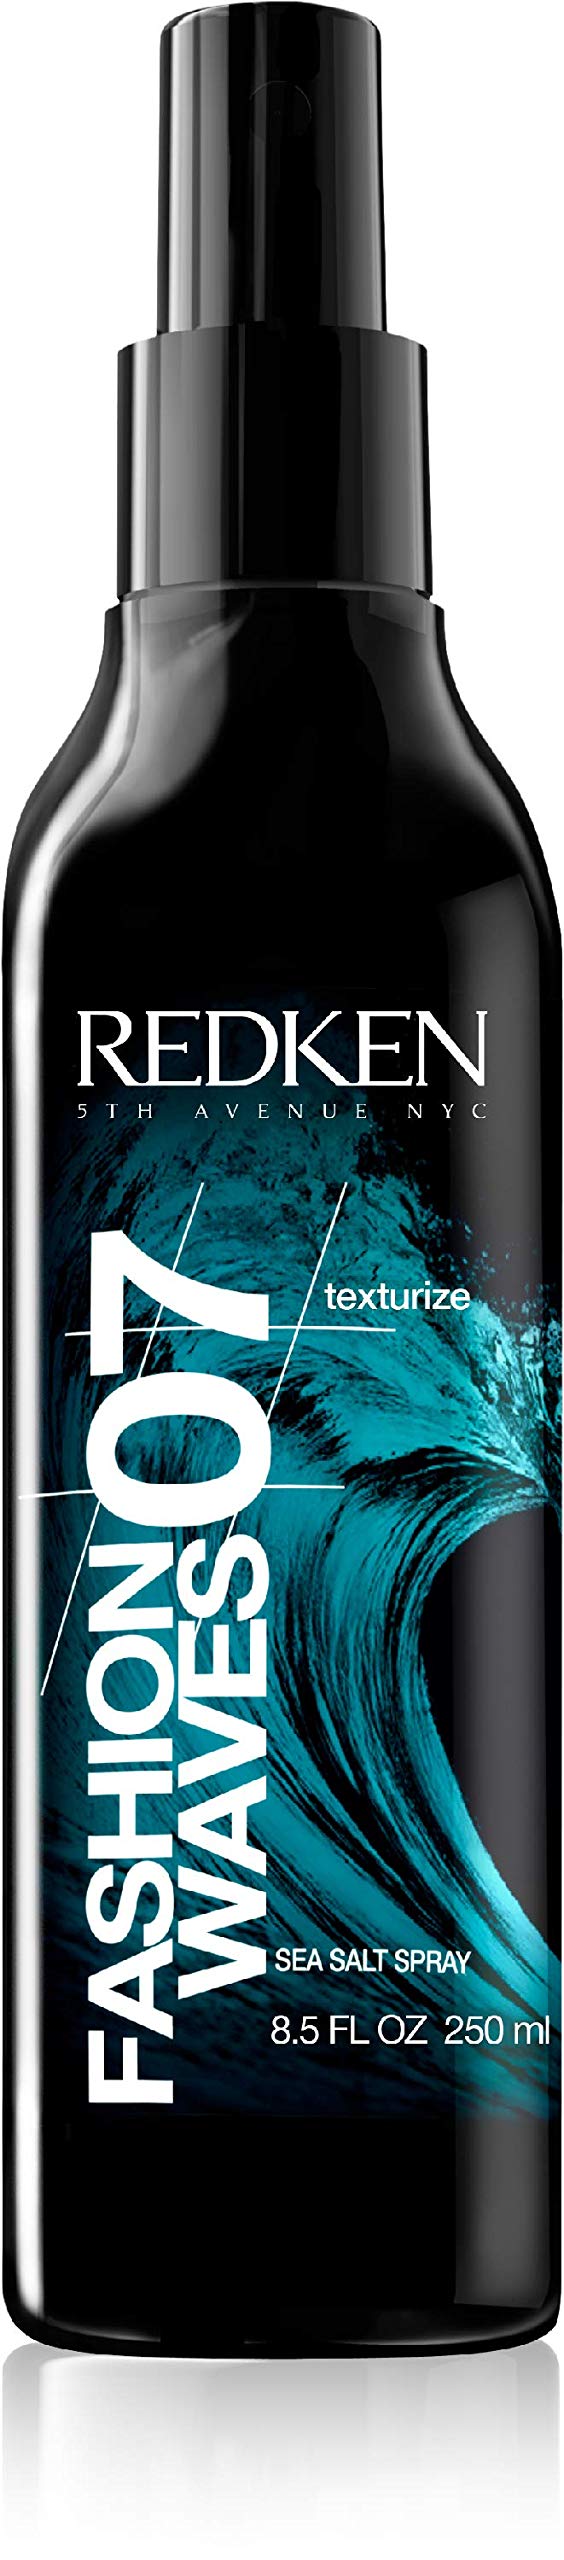 [Australia] - Redken Fashion 07 Waves Sea Salt Spray 250ml Texturize 